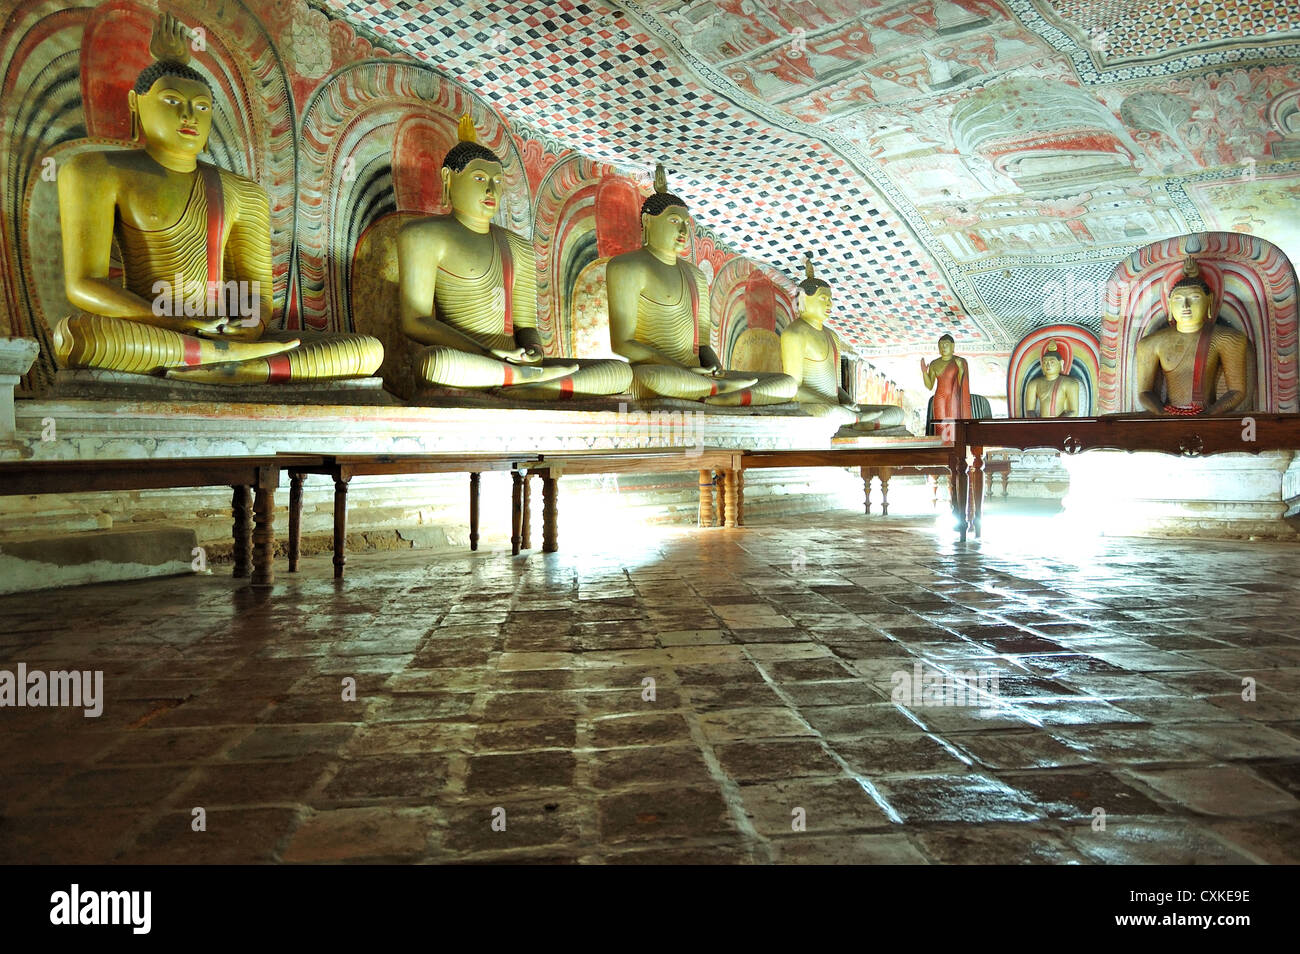 Dambulla cave temple est la grande grotte temple complexe avec plus de 80 grottes et documenté 153 statues de Bouddha, le Sri Lanka Banque D'Images